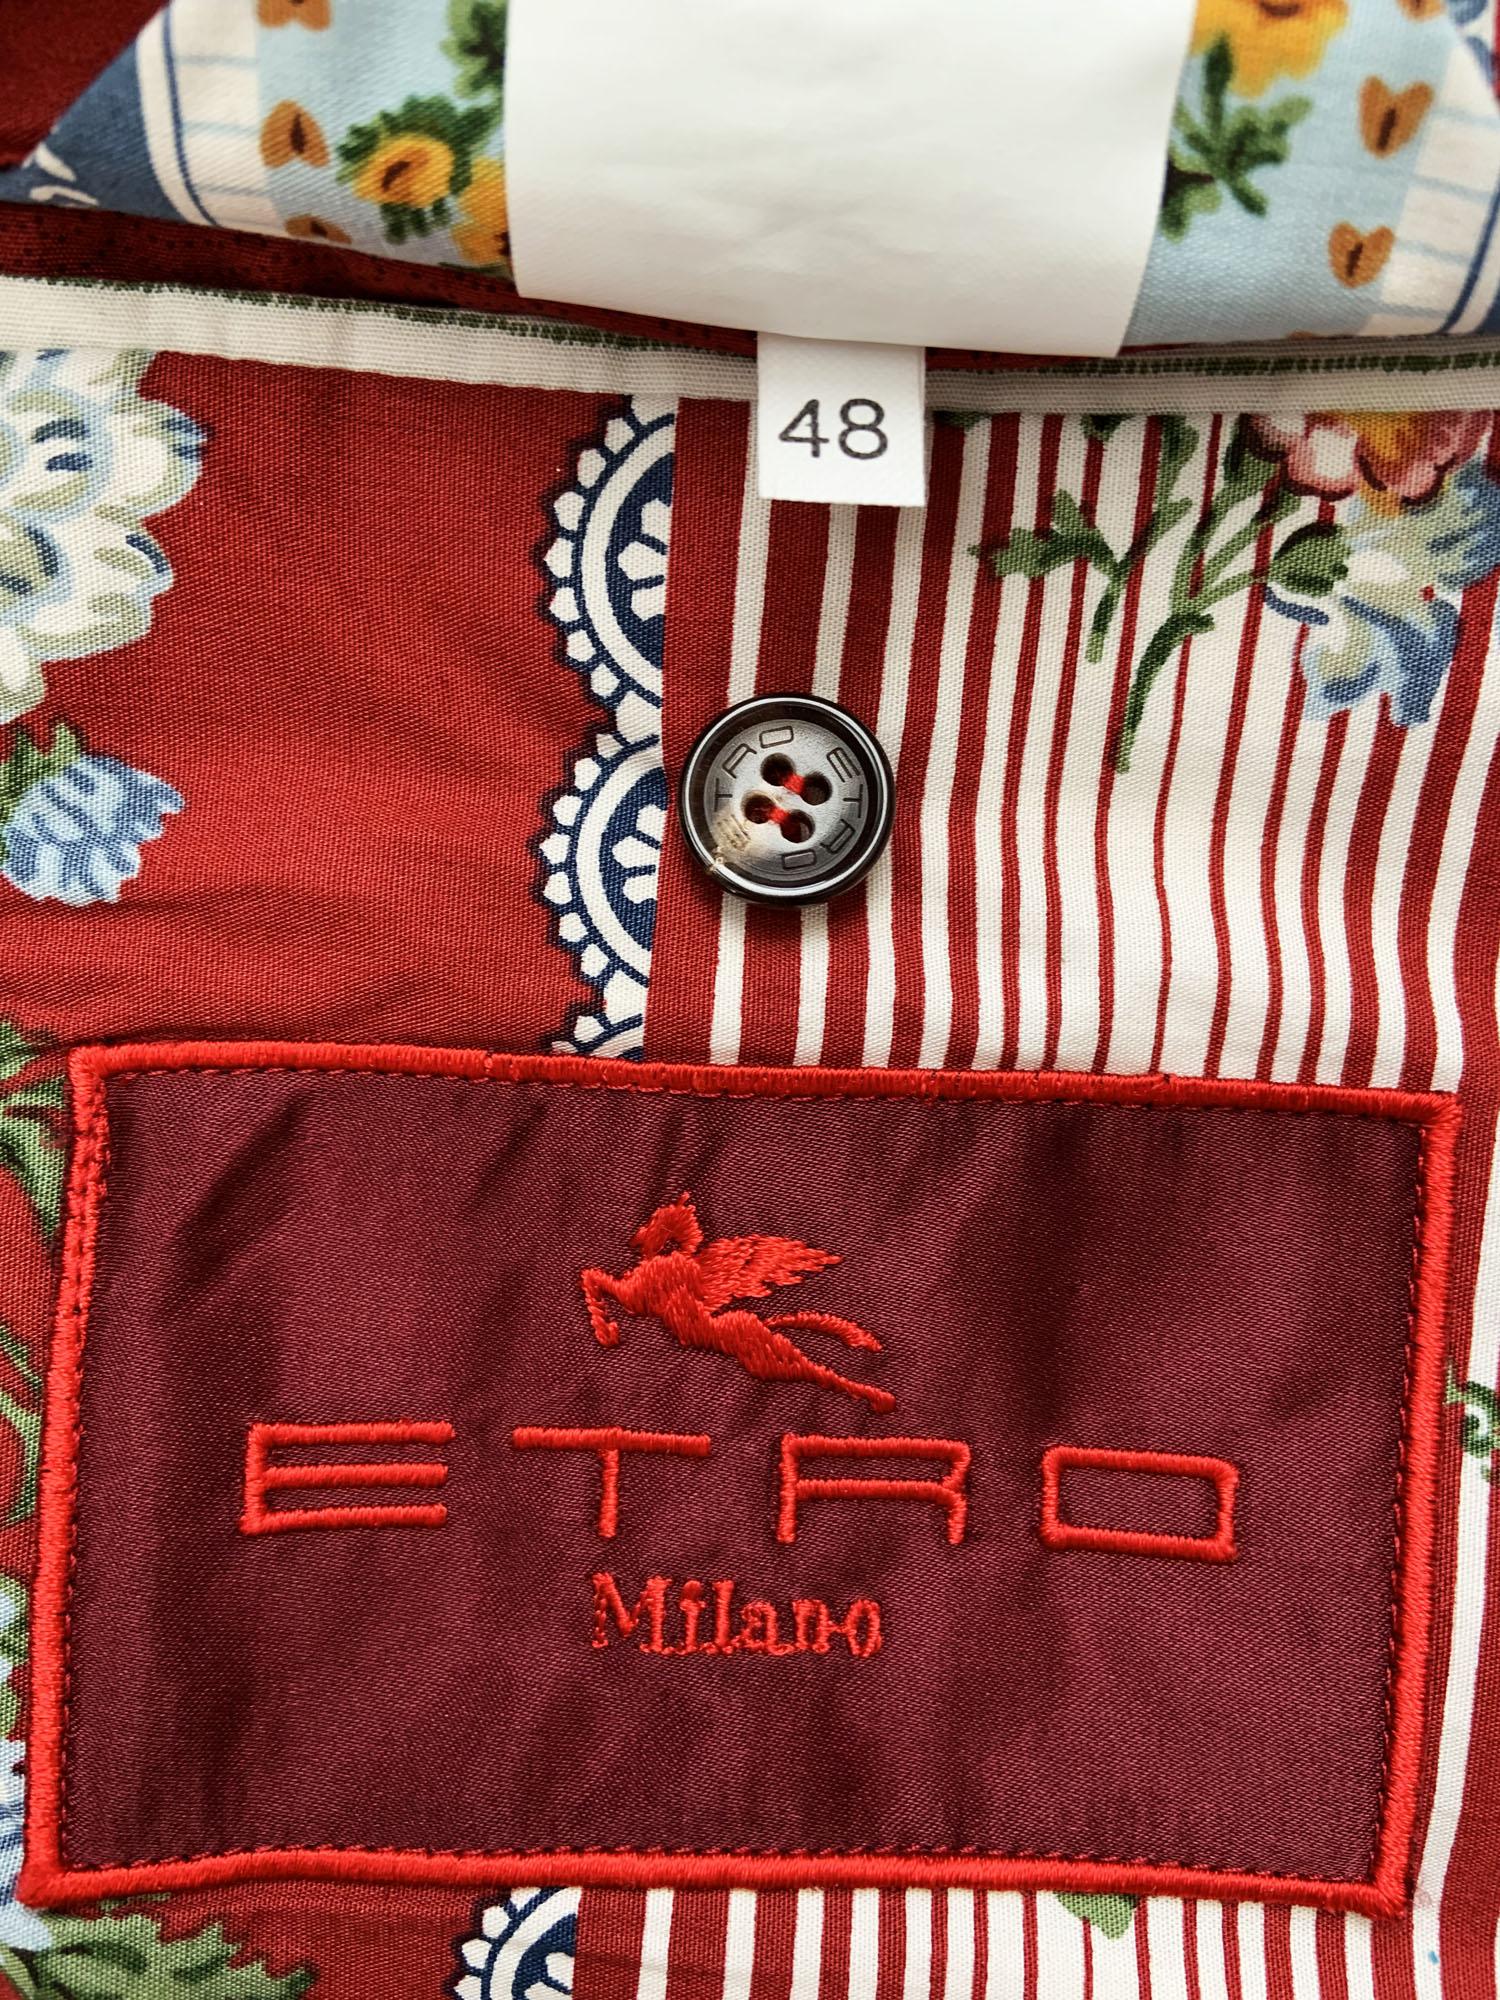 Etro Men's Red Velvet Tuxedo Pant Suit Italian 48/46 For Sale 8